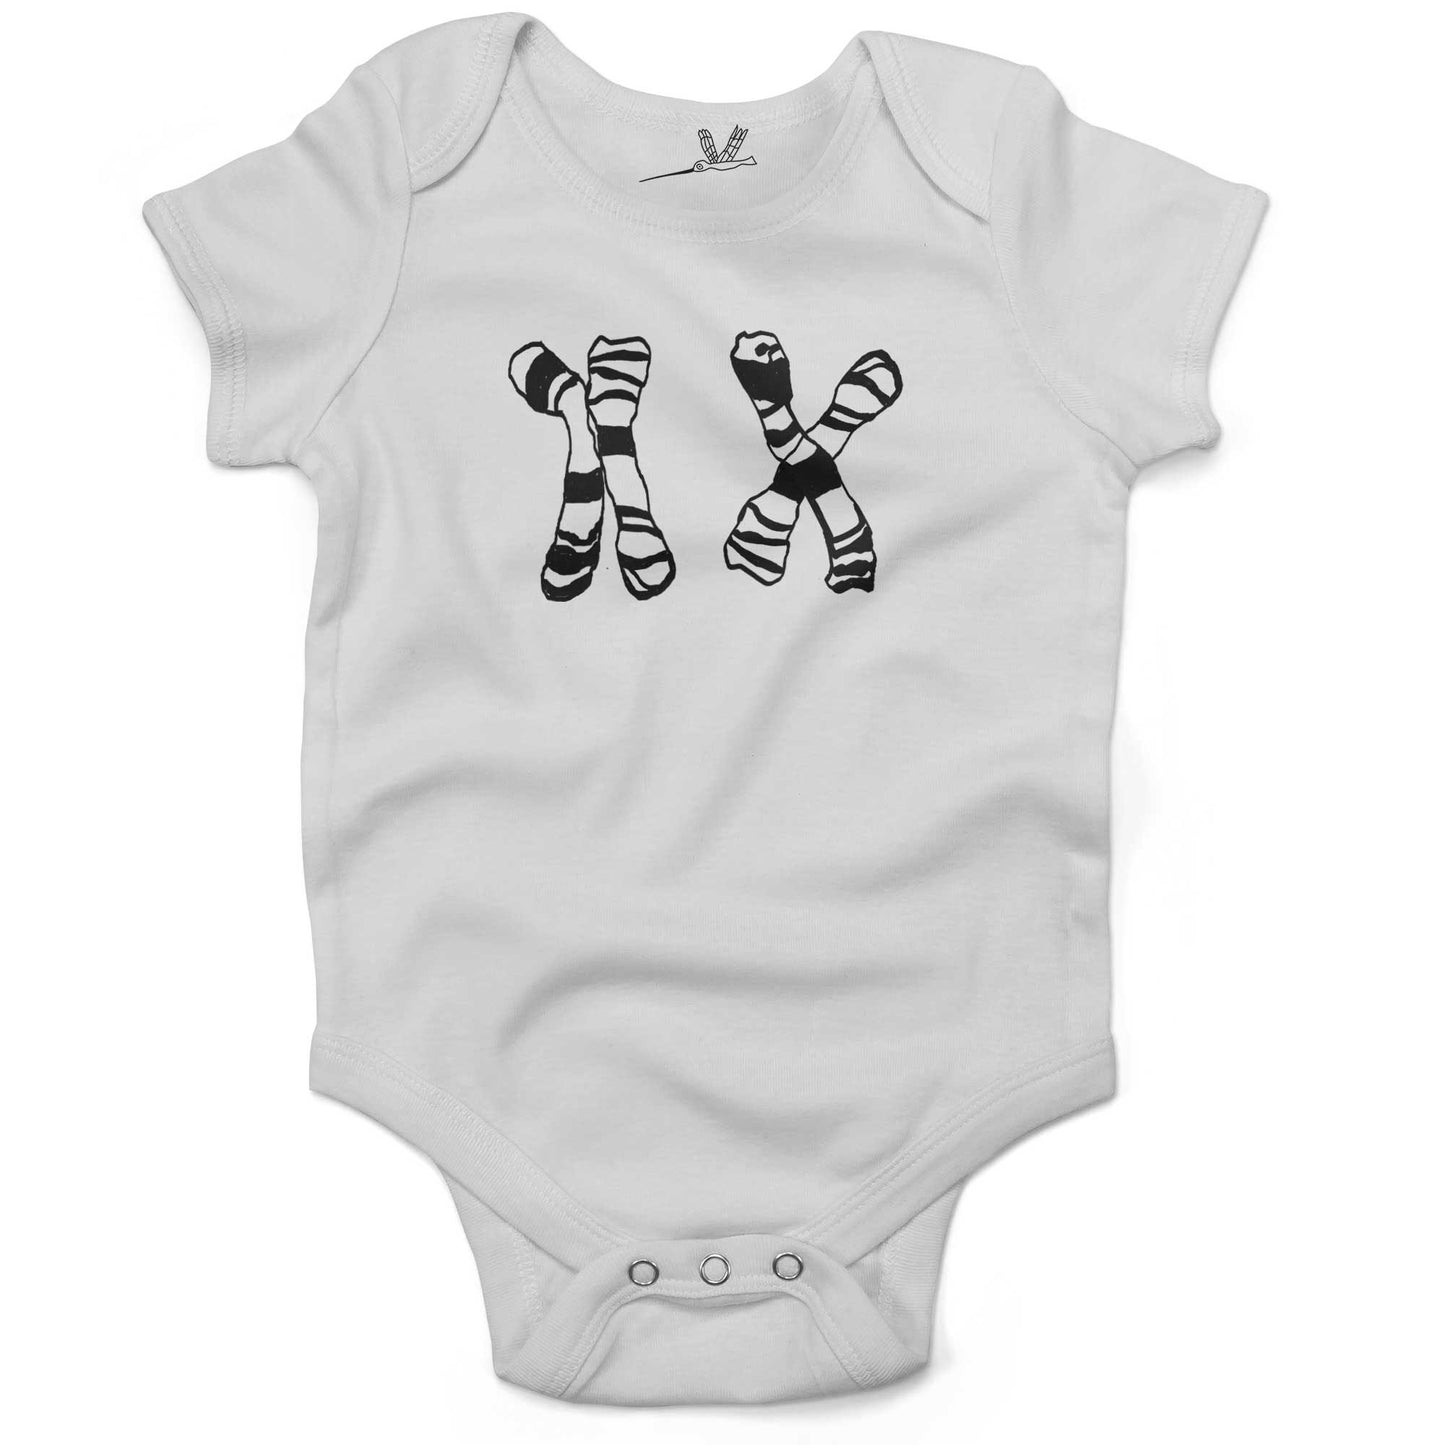 XX Girl Chromosomes Infant Bodysuit or Raglan Tee-White-3-6 months